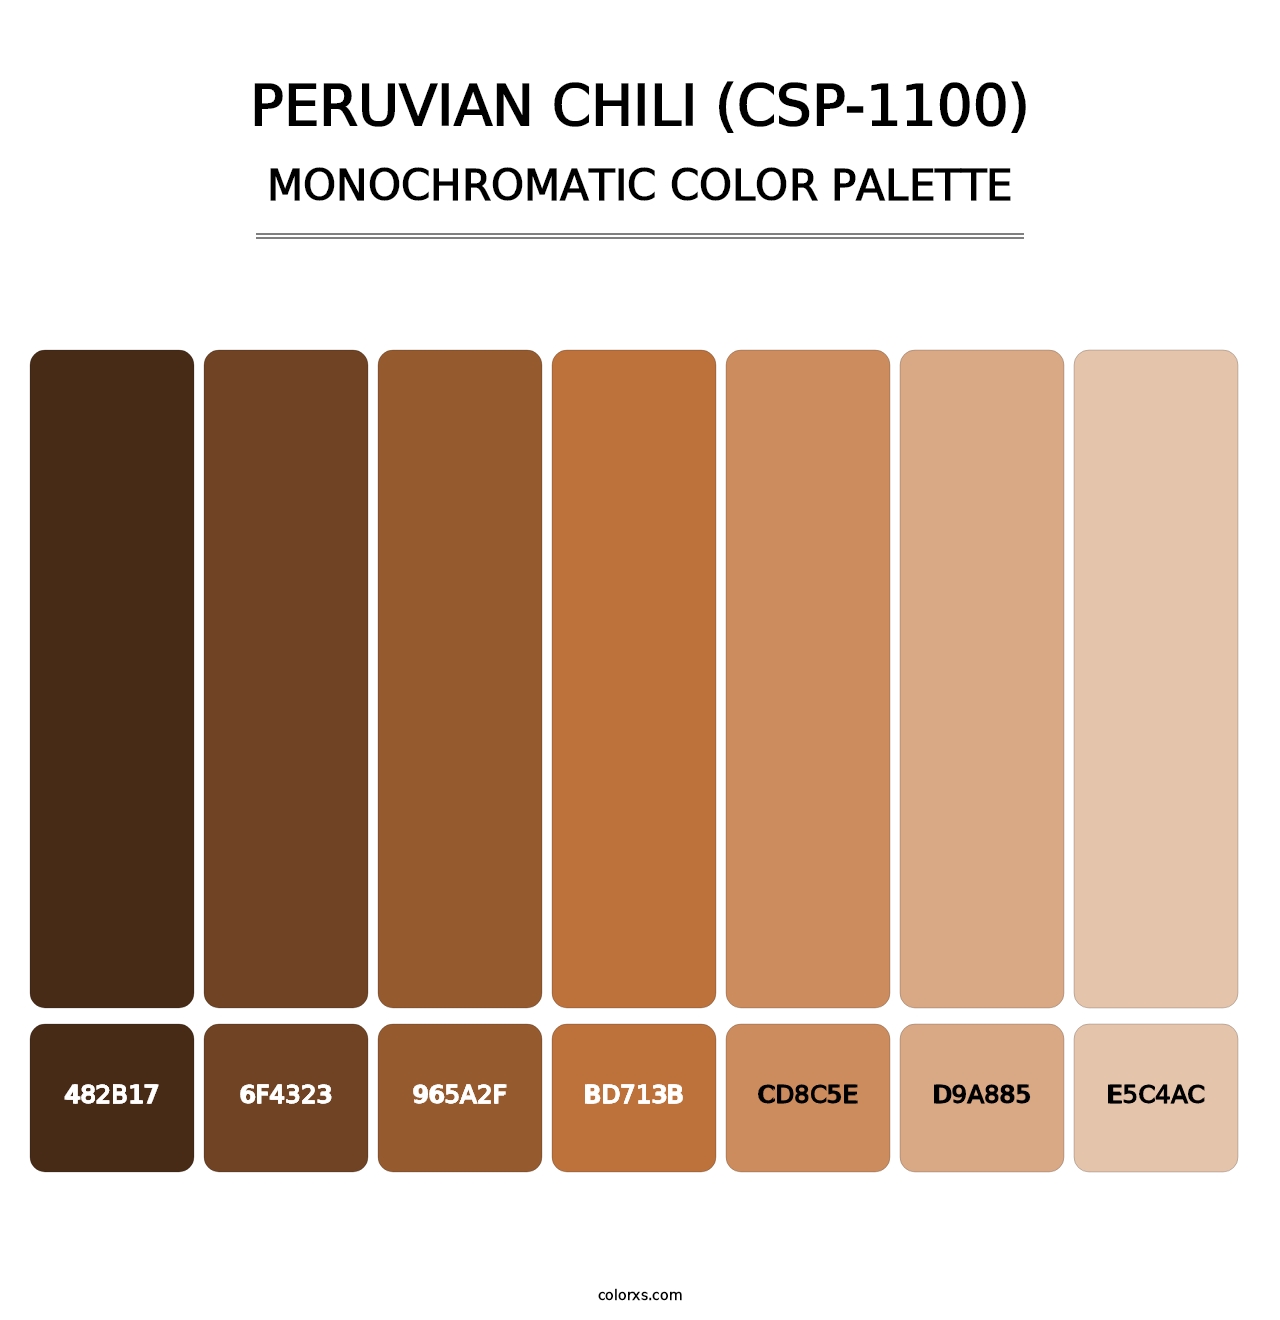 Peruvian Chili (CSP-1100) - Monochromatic Color Palette